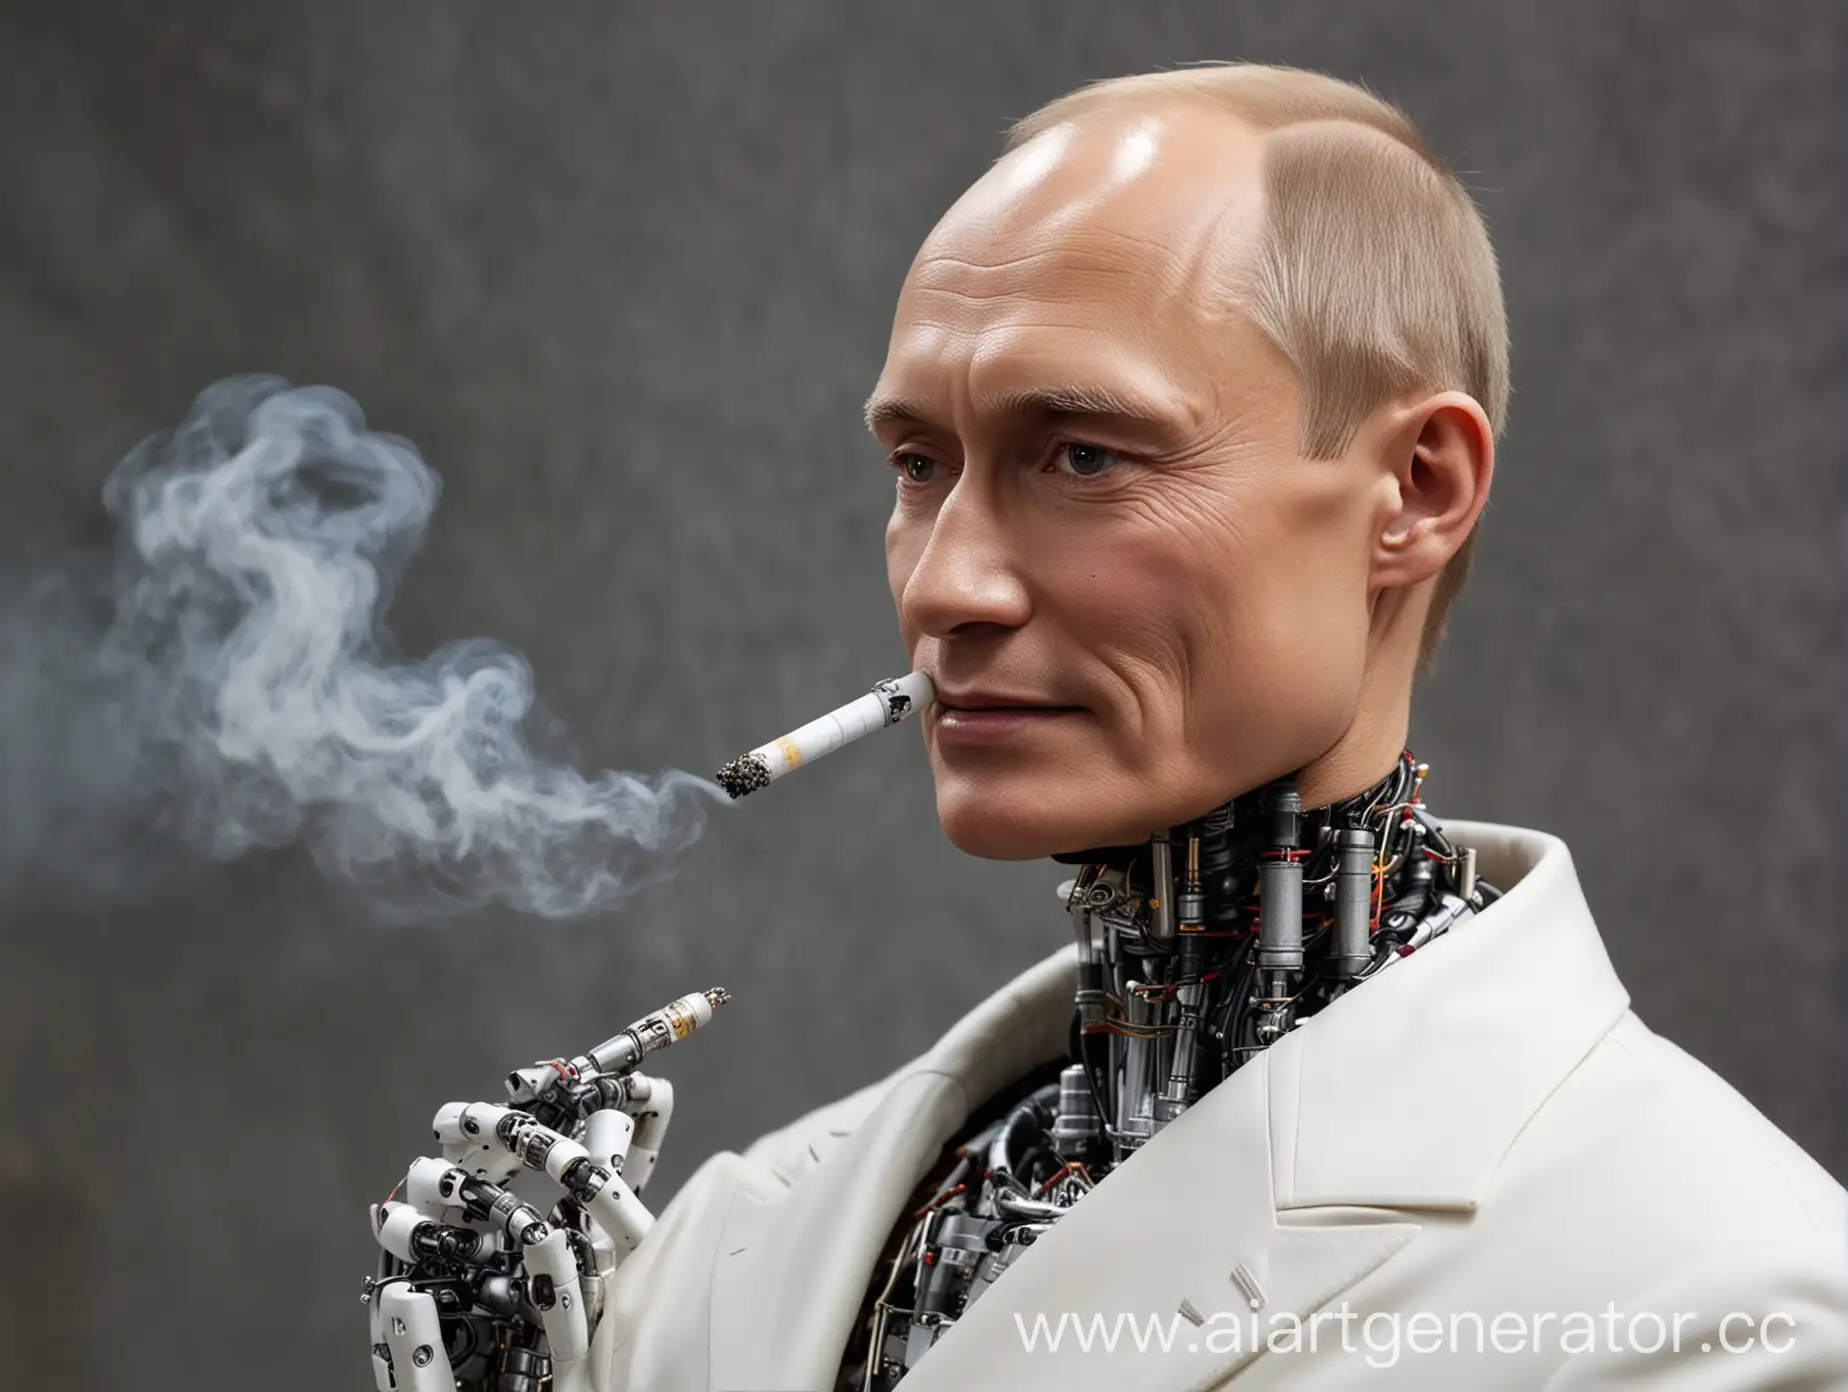 Робот скайнет, идиалтный двойник близнеца презедента рф путина, курит сигарету и улыбается